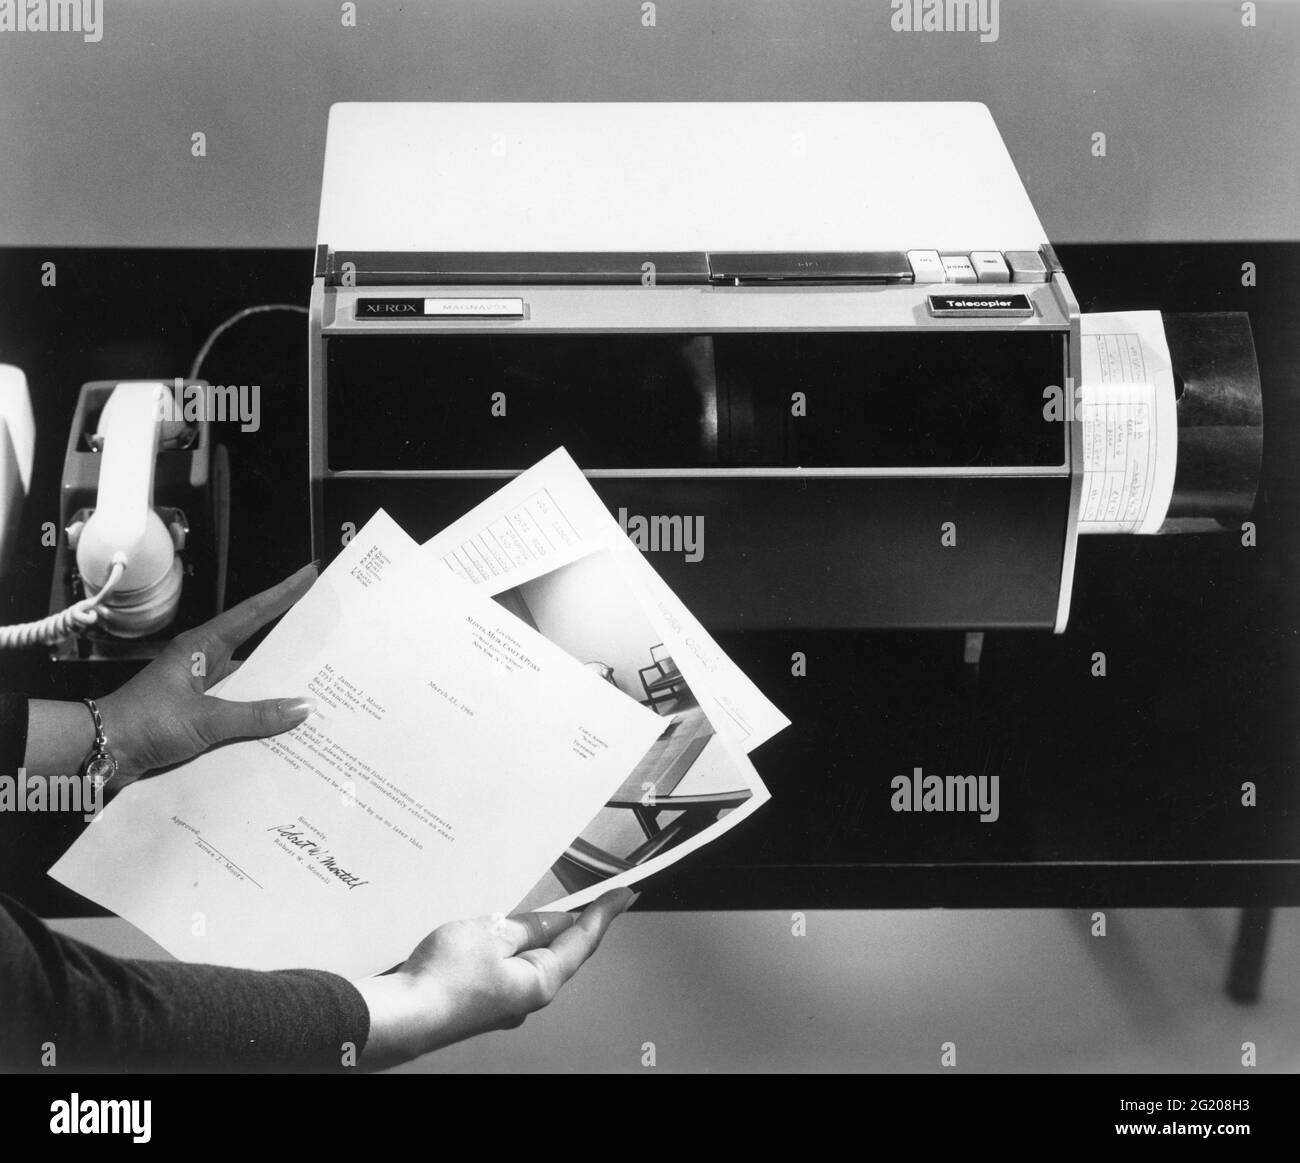 Una nuova macchina per ufficio - il telecopiatore Xerox Magnafax - può guardare un'immagine o una lettera e convertire l'immagine in suono su un telefono. All'altra estremità sul telefono ricevente, una macchina simile riconverte il suono in un'immagine pochi minuti dopo, Rochester, NY, 1966. (Immagini Vintage Xerox/RBM) Foto Stock